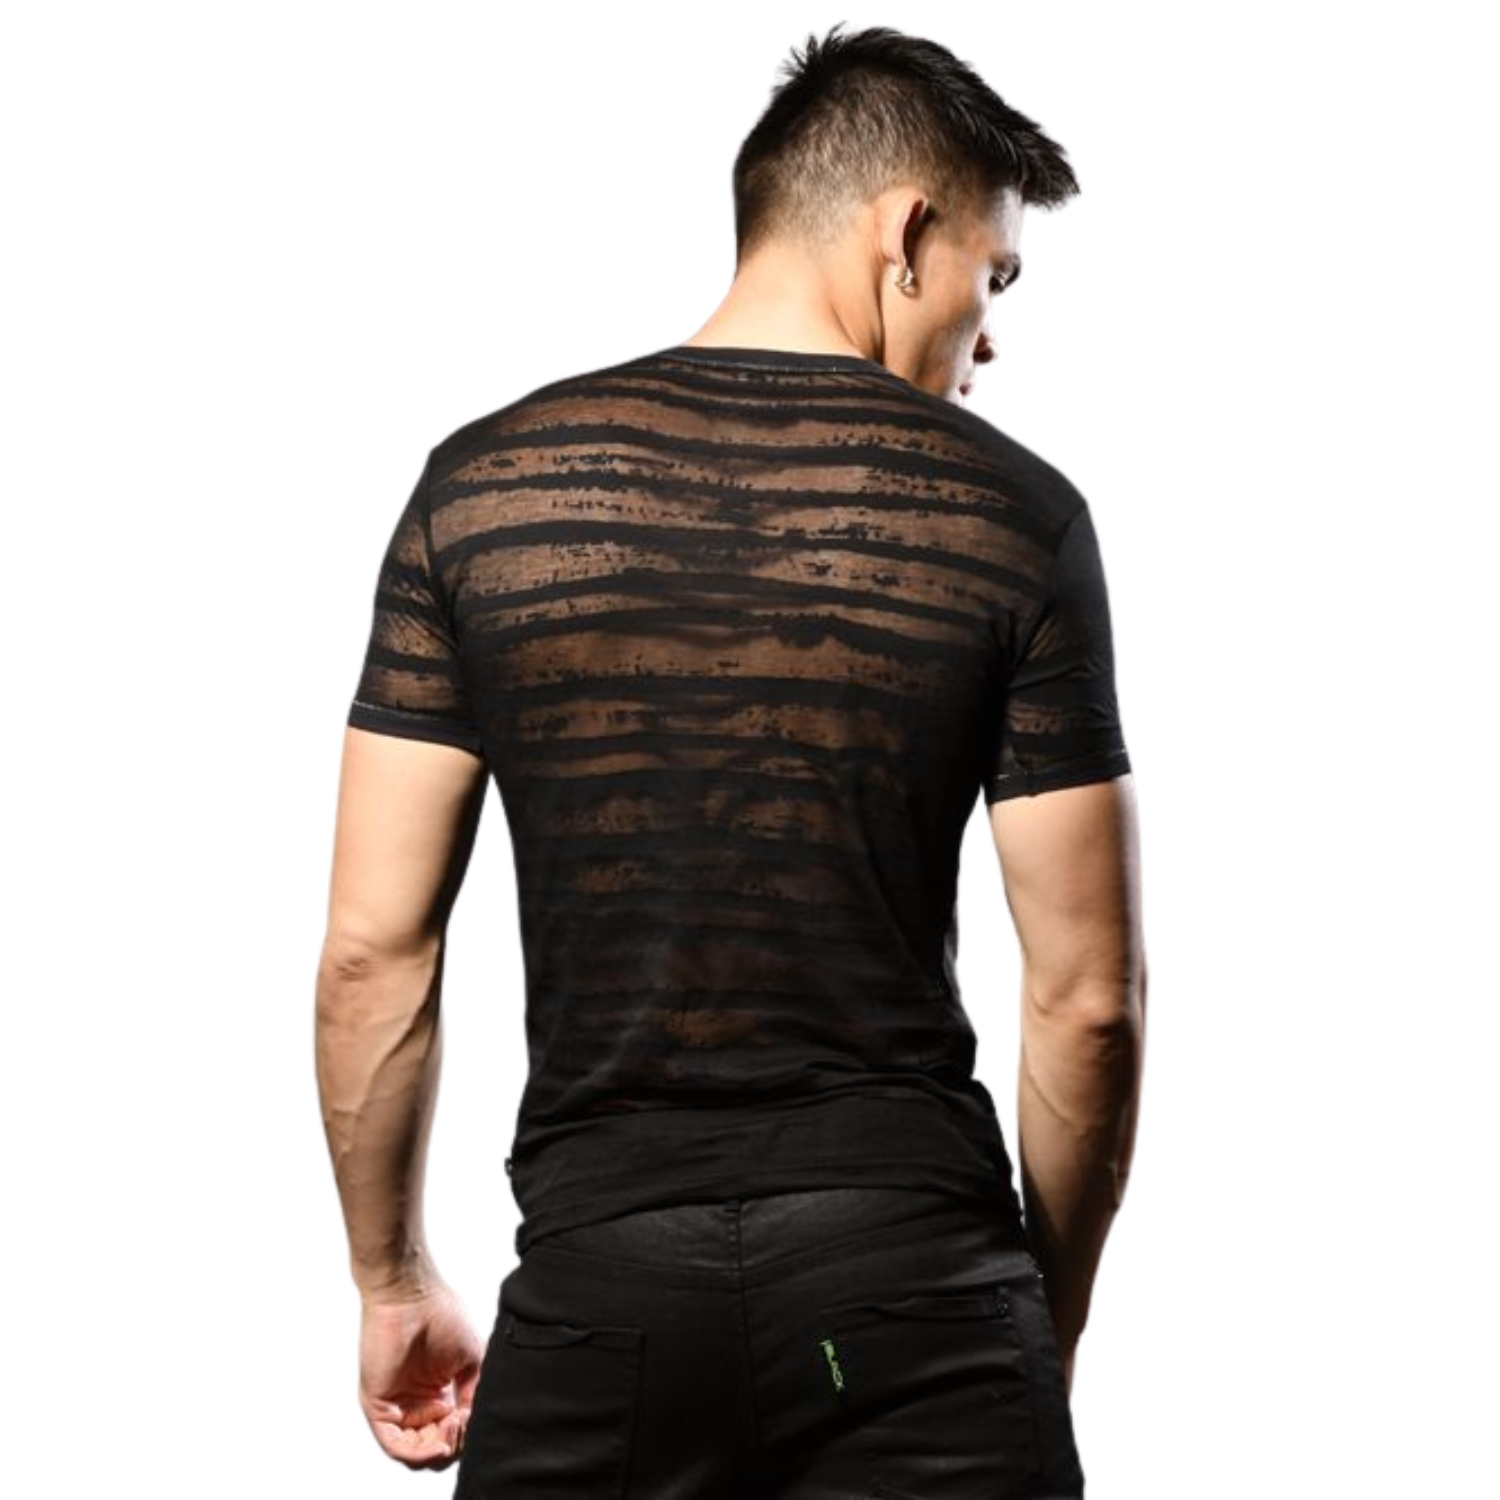 Zwarte Burnout Stripe Shirt van het merk Andrew Christian perfect voor gay mannen en te koop bij Flavourez.